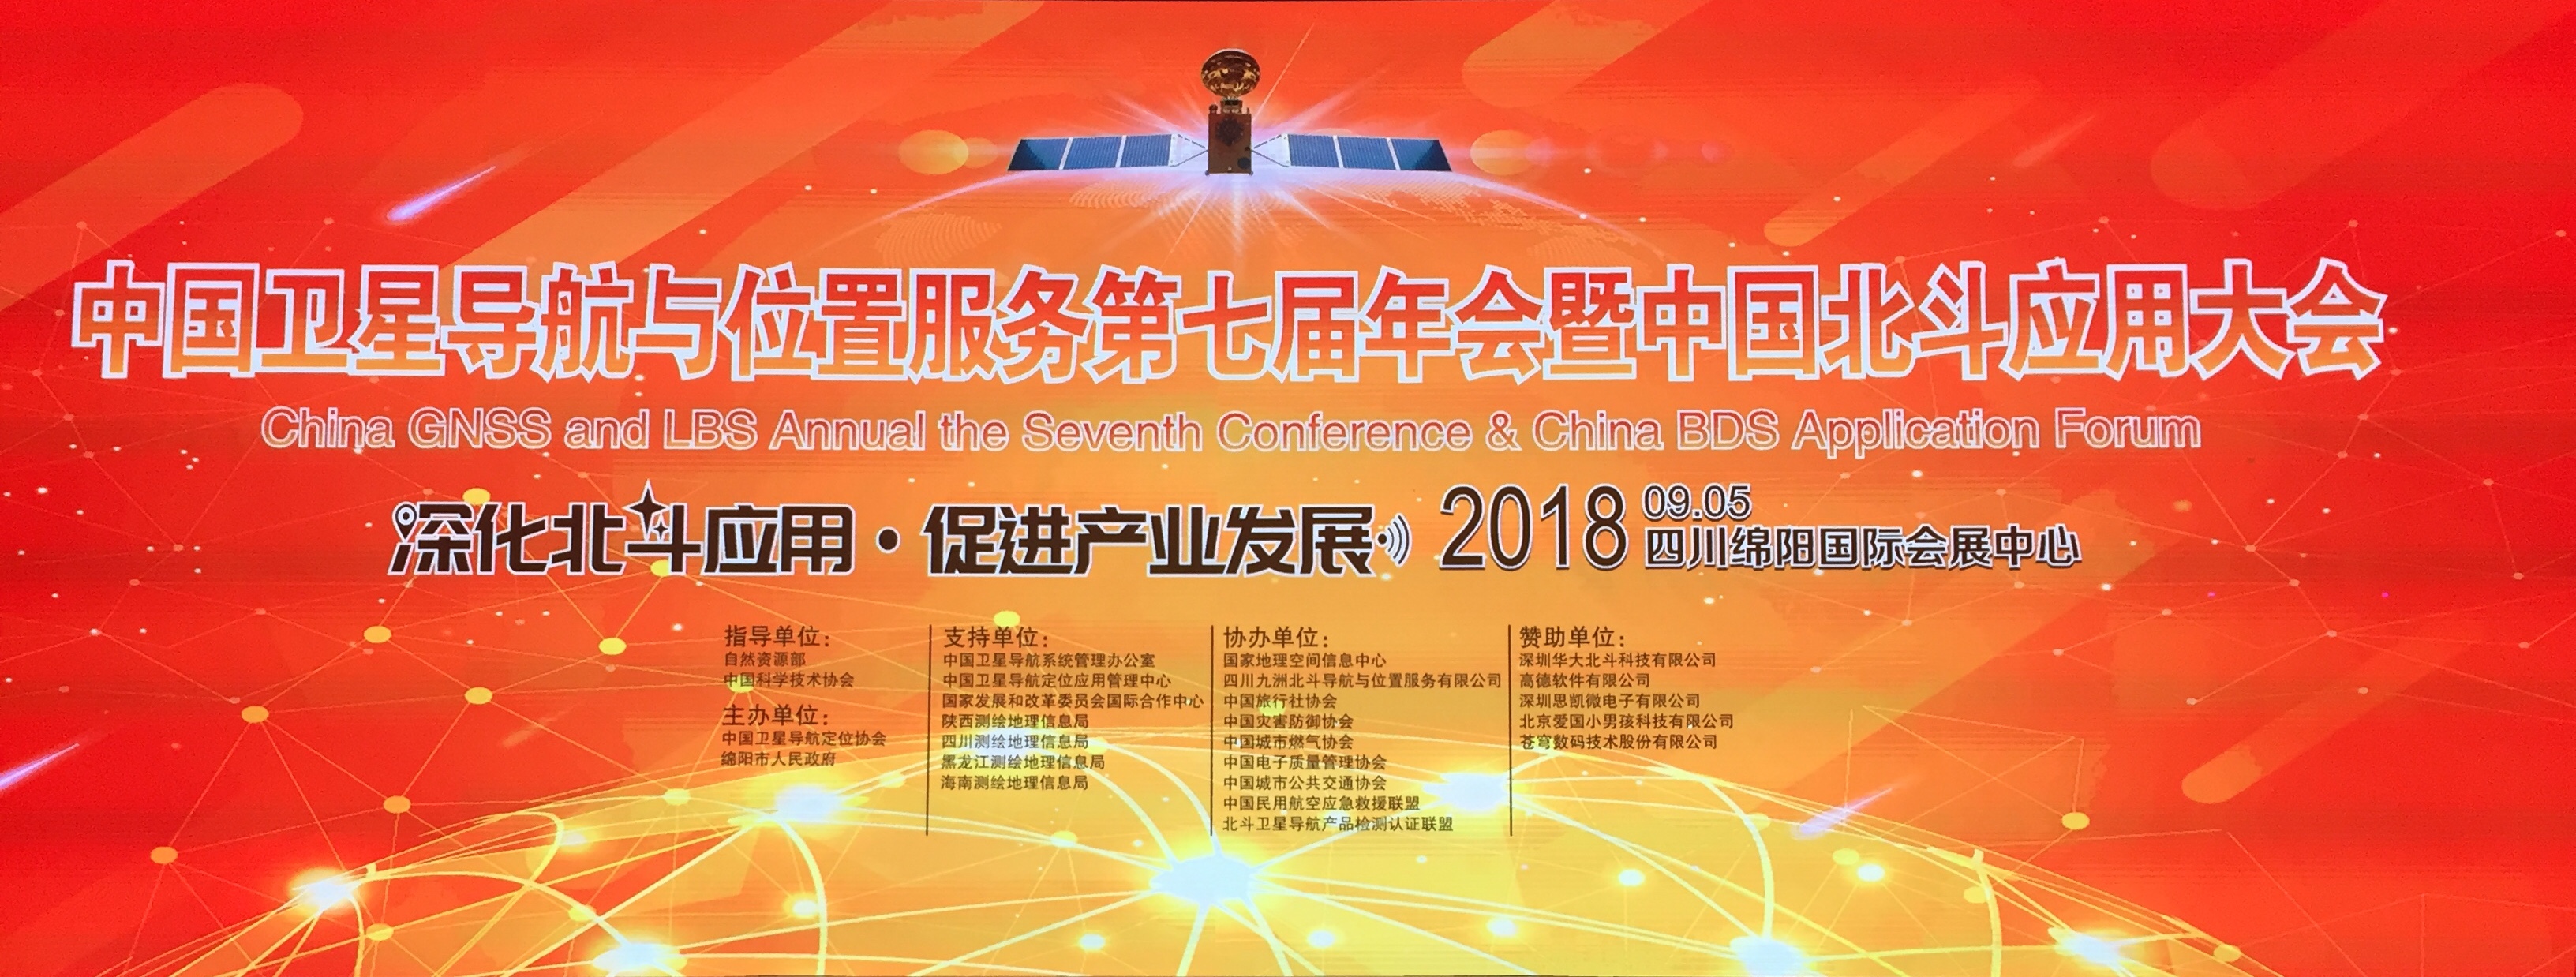 第七届中国卫星导航与位置服务年会9月5日于四川绵阳正式开幕